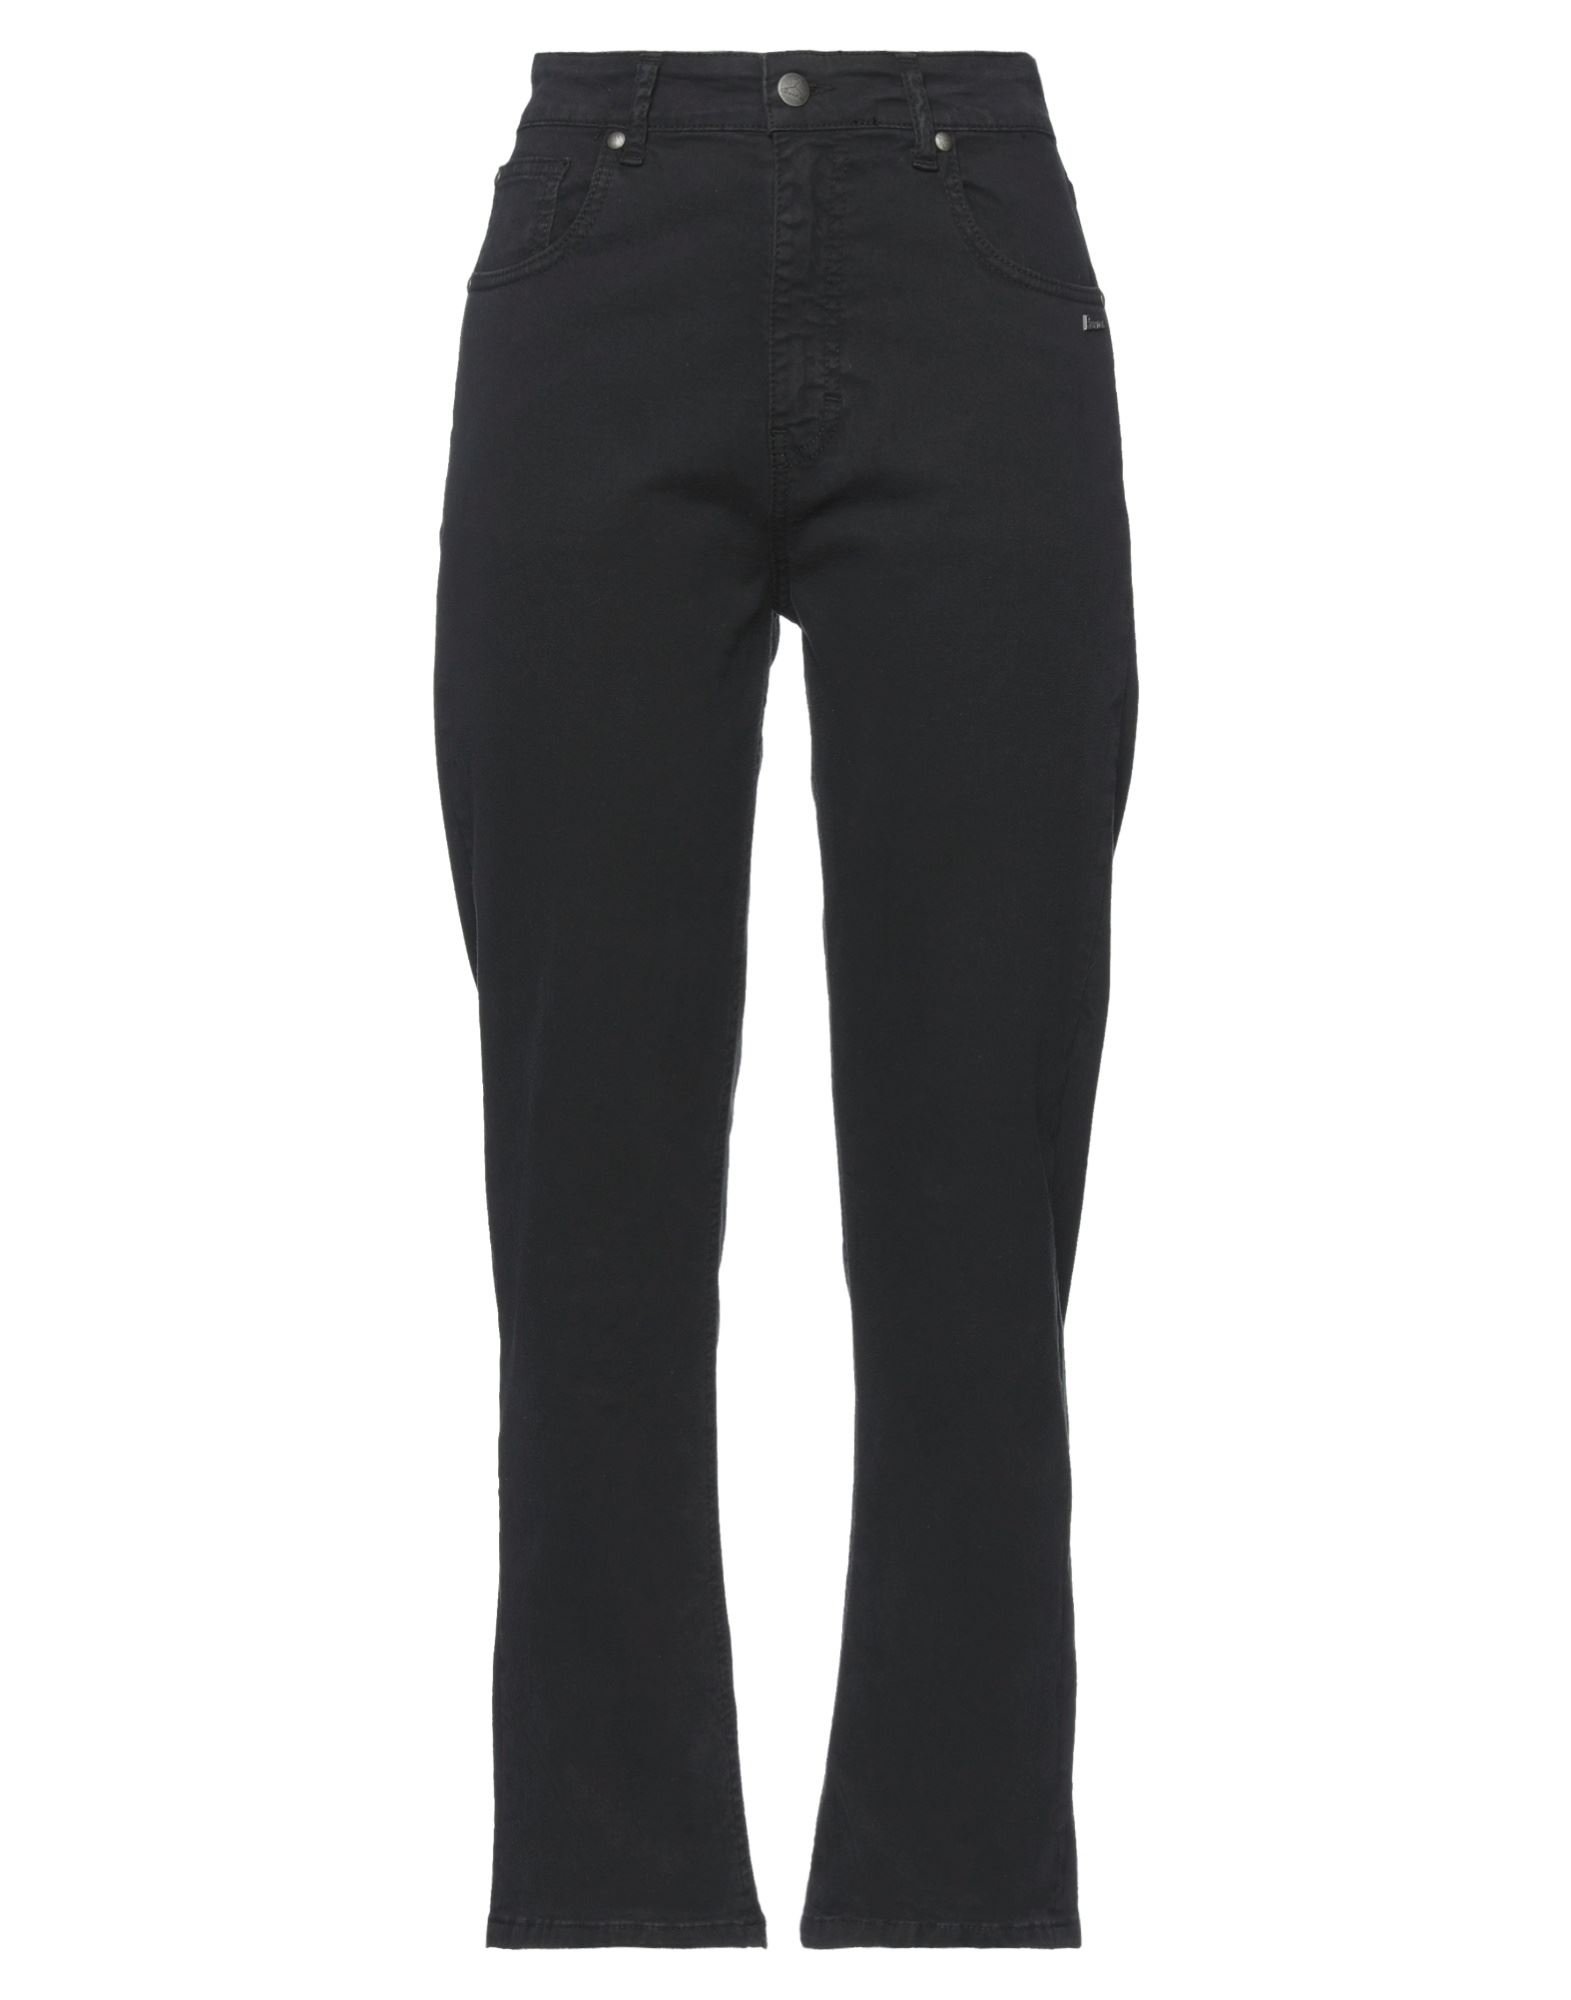 Shop Berna Woman Pants Black Size 30 Cotton, Elastane